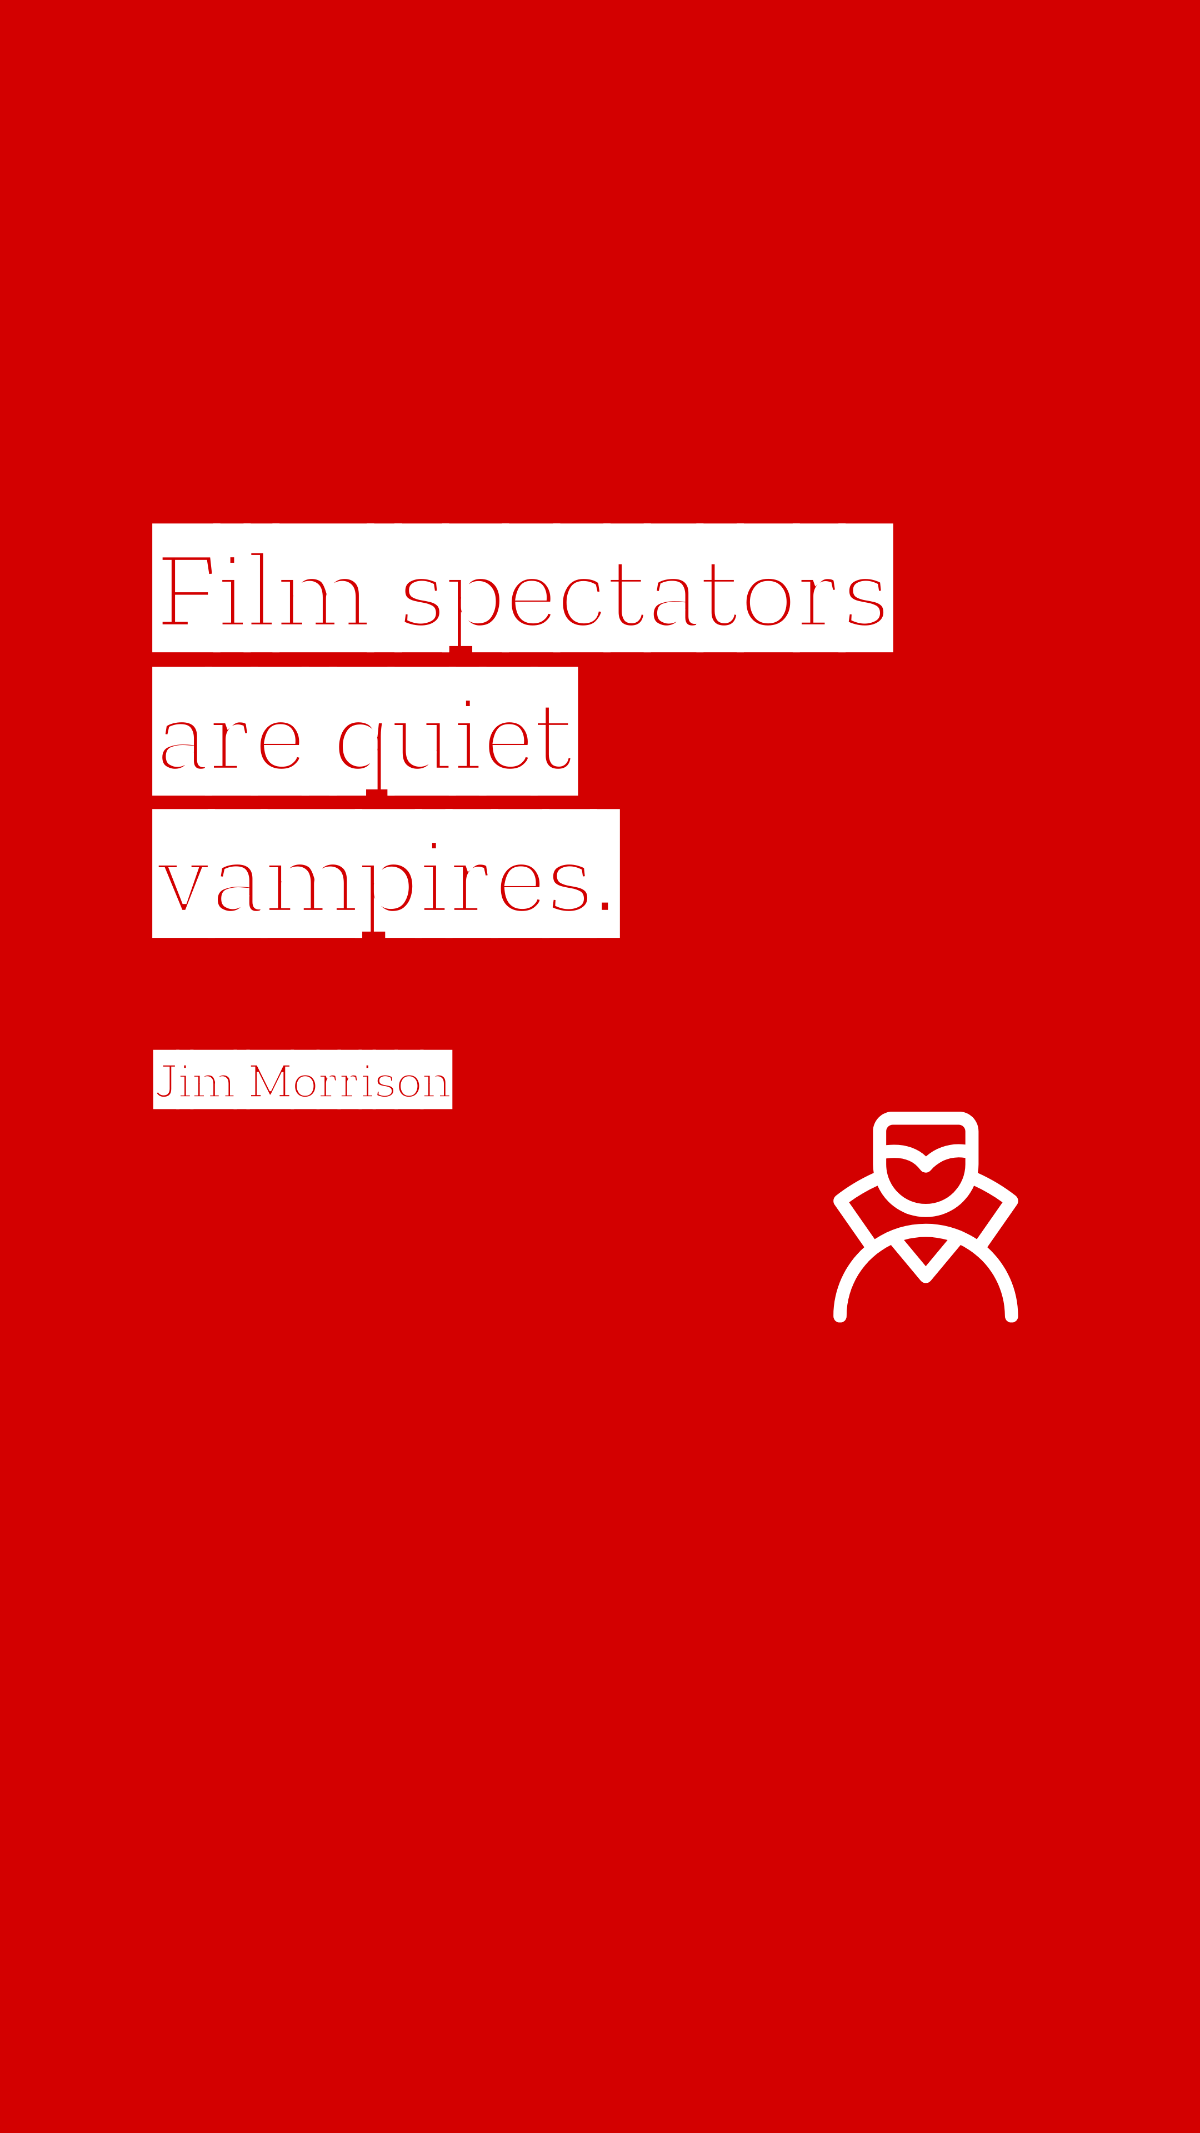 Jim Morrison - Film spectators are quiet vampires. Template